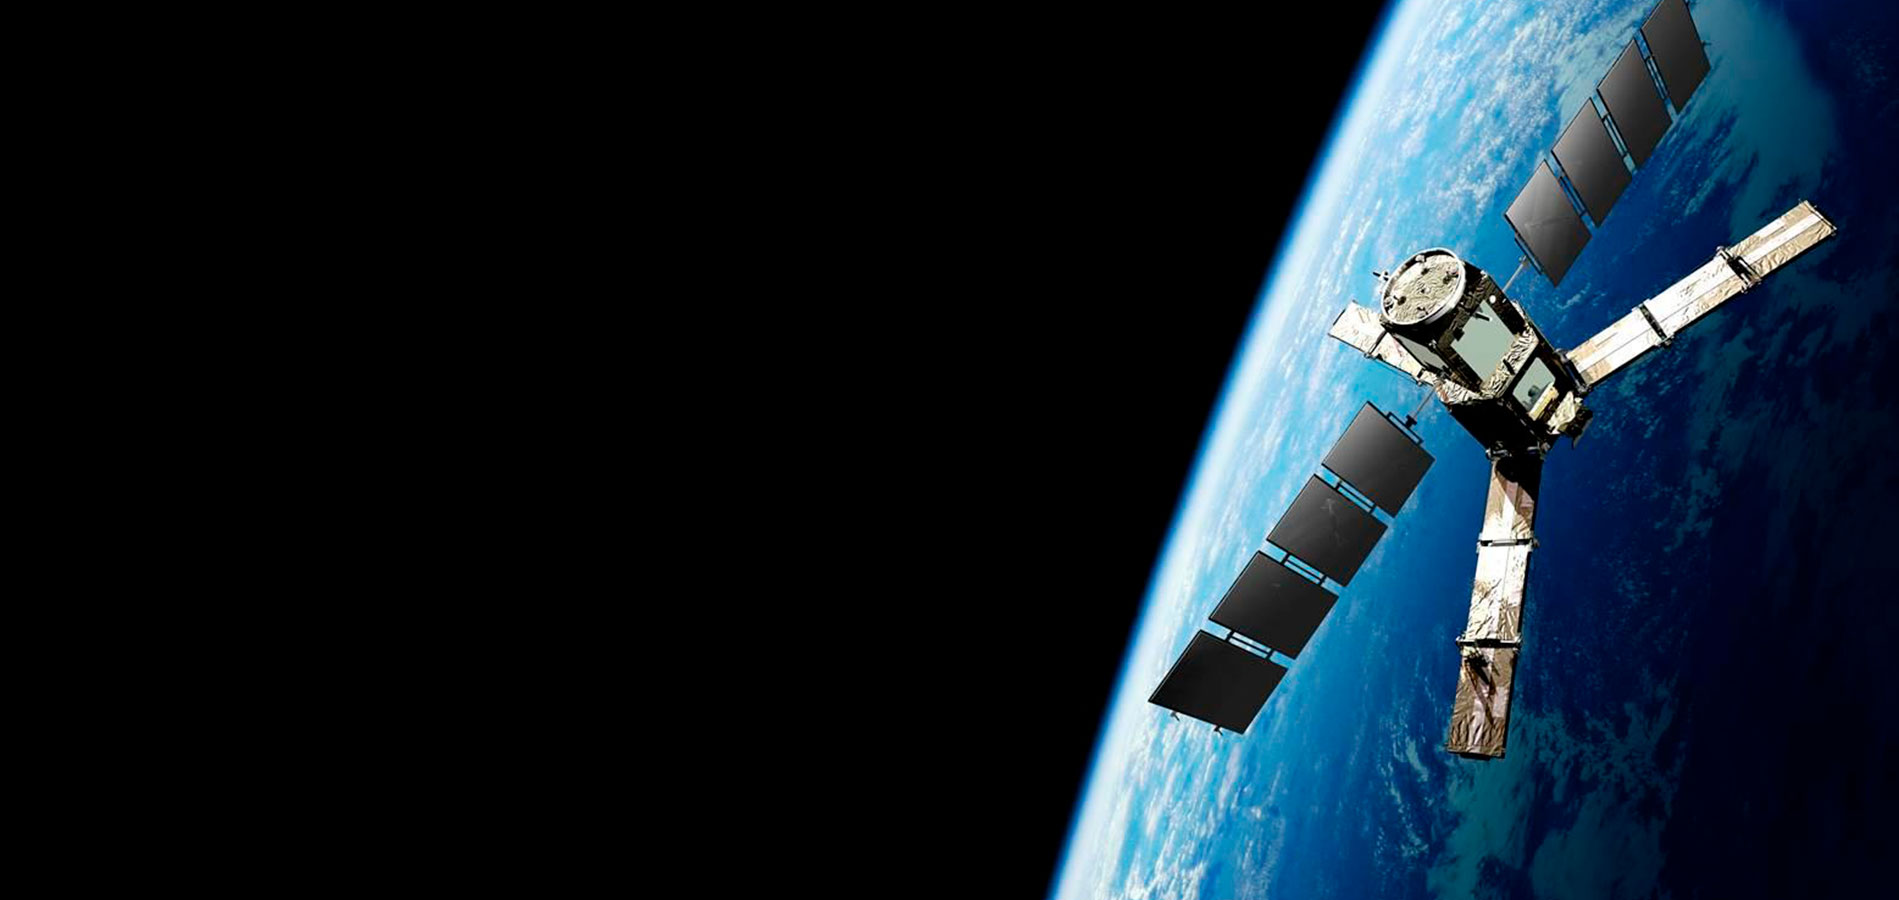 Imagem de um satélite em órbita com a terra, fazendo referência ao monitoramento por imagens de satélites